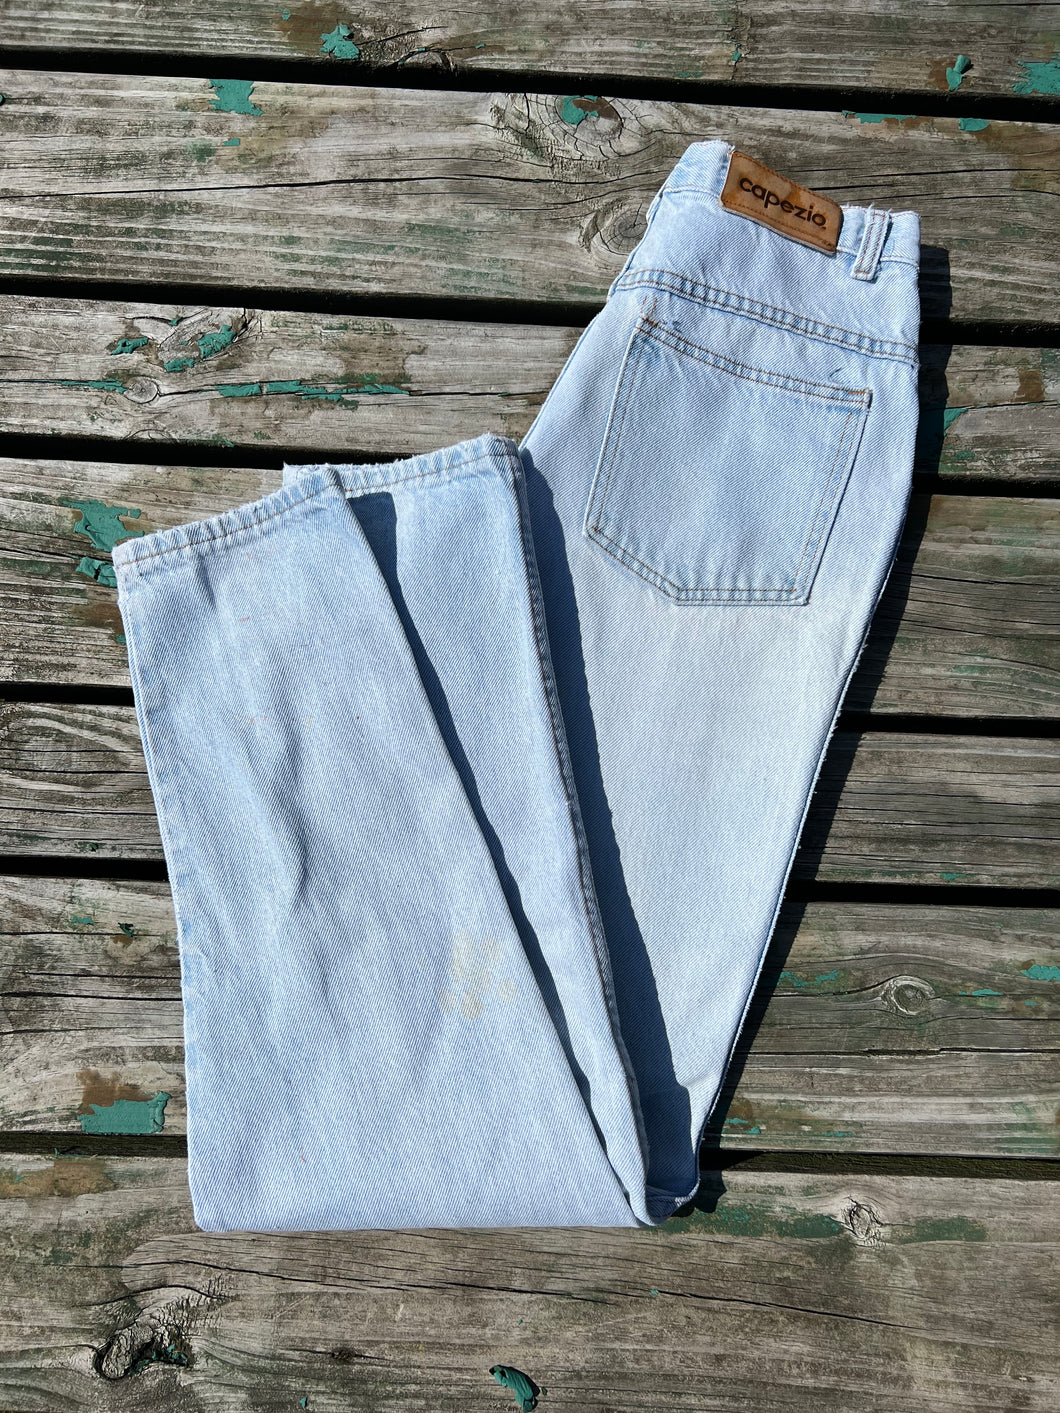 Vintage 80s Capezio Lightwash Jeans (26x31)